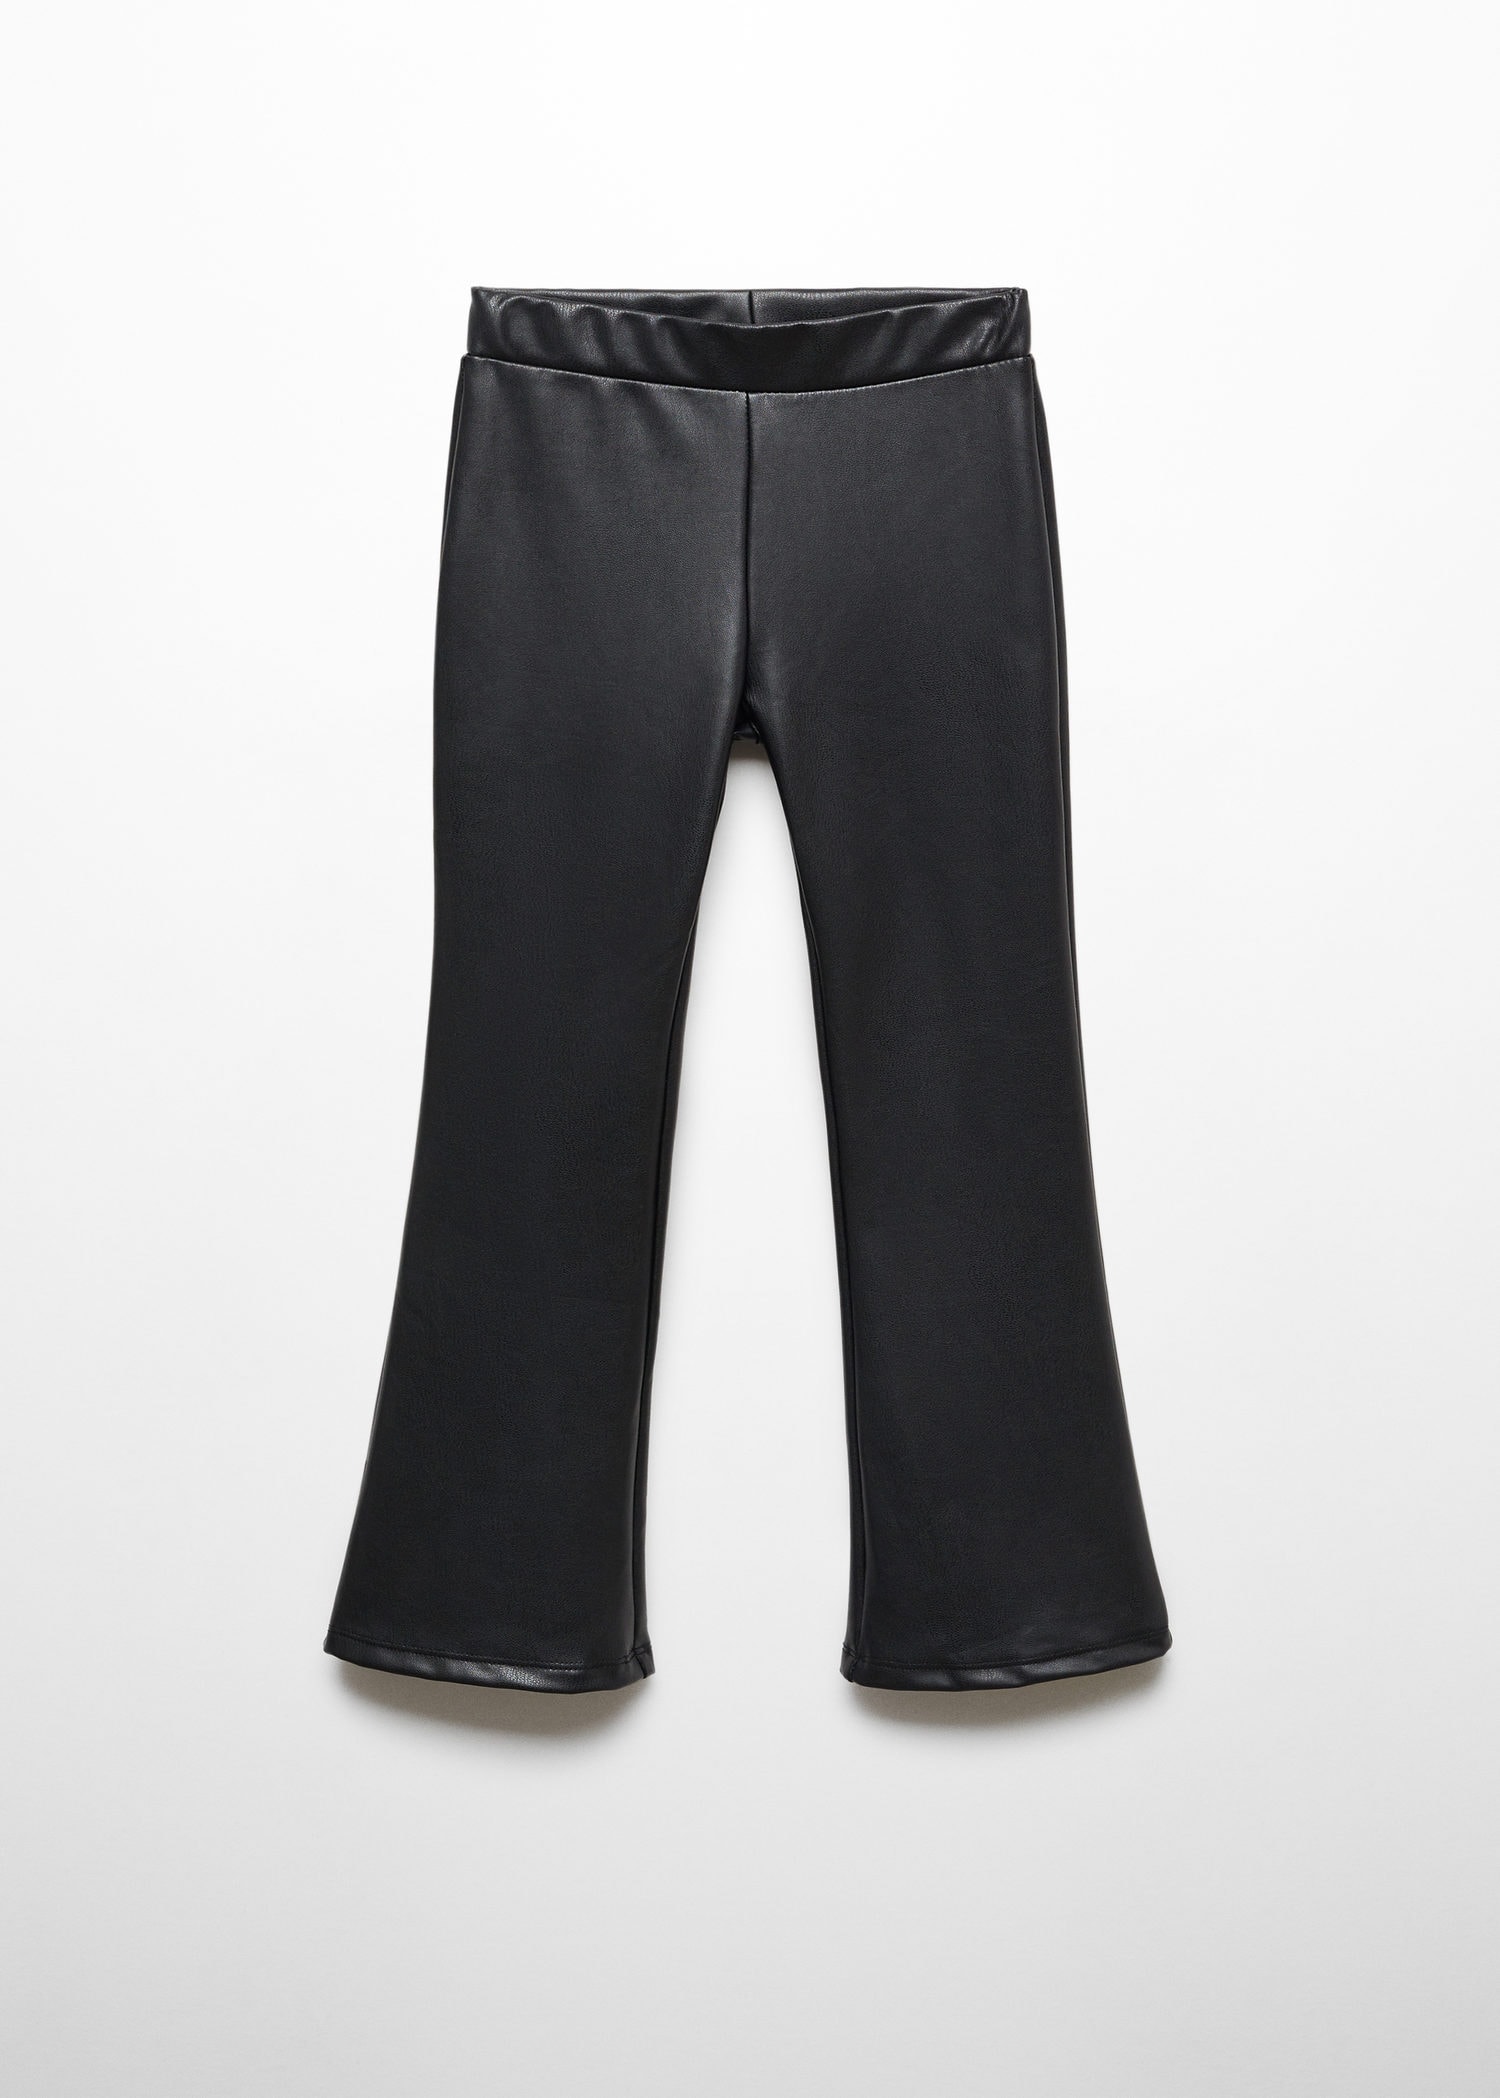 H&M Faux Leather Leggings, Pants, Size 12